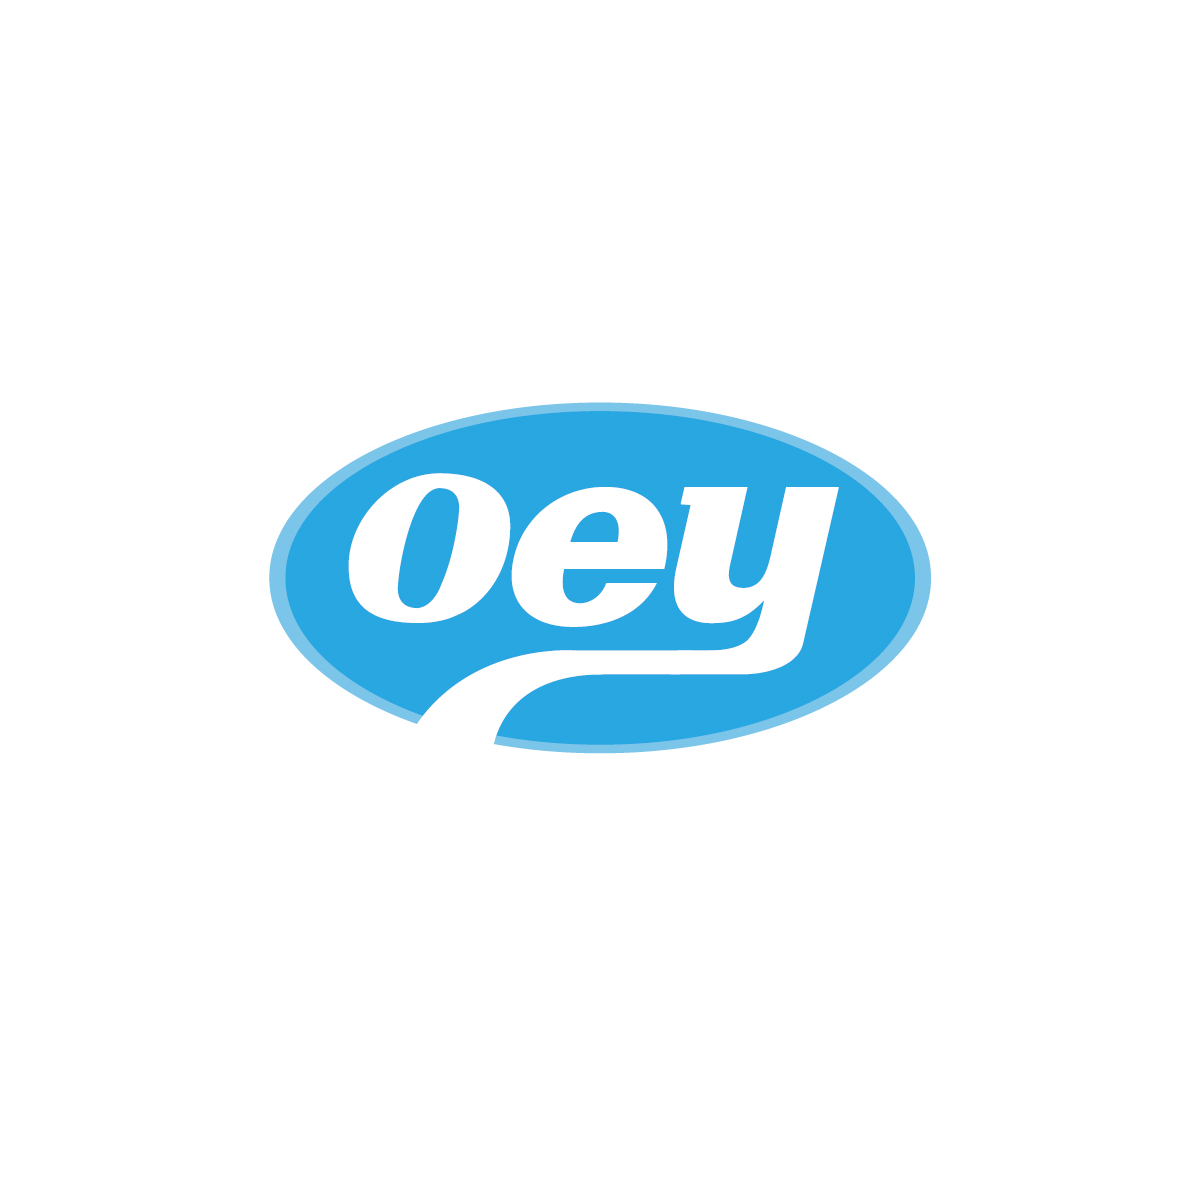 广州市君衍电子商务商行商标OEY（35类）商标转让流程及费用